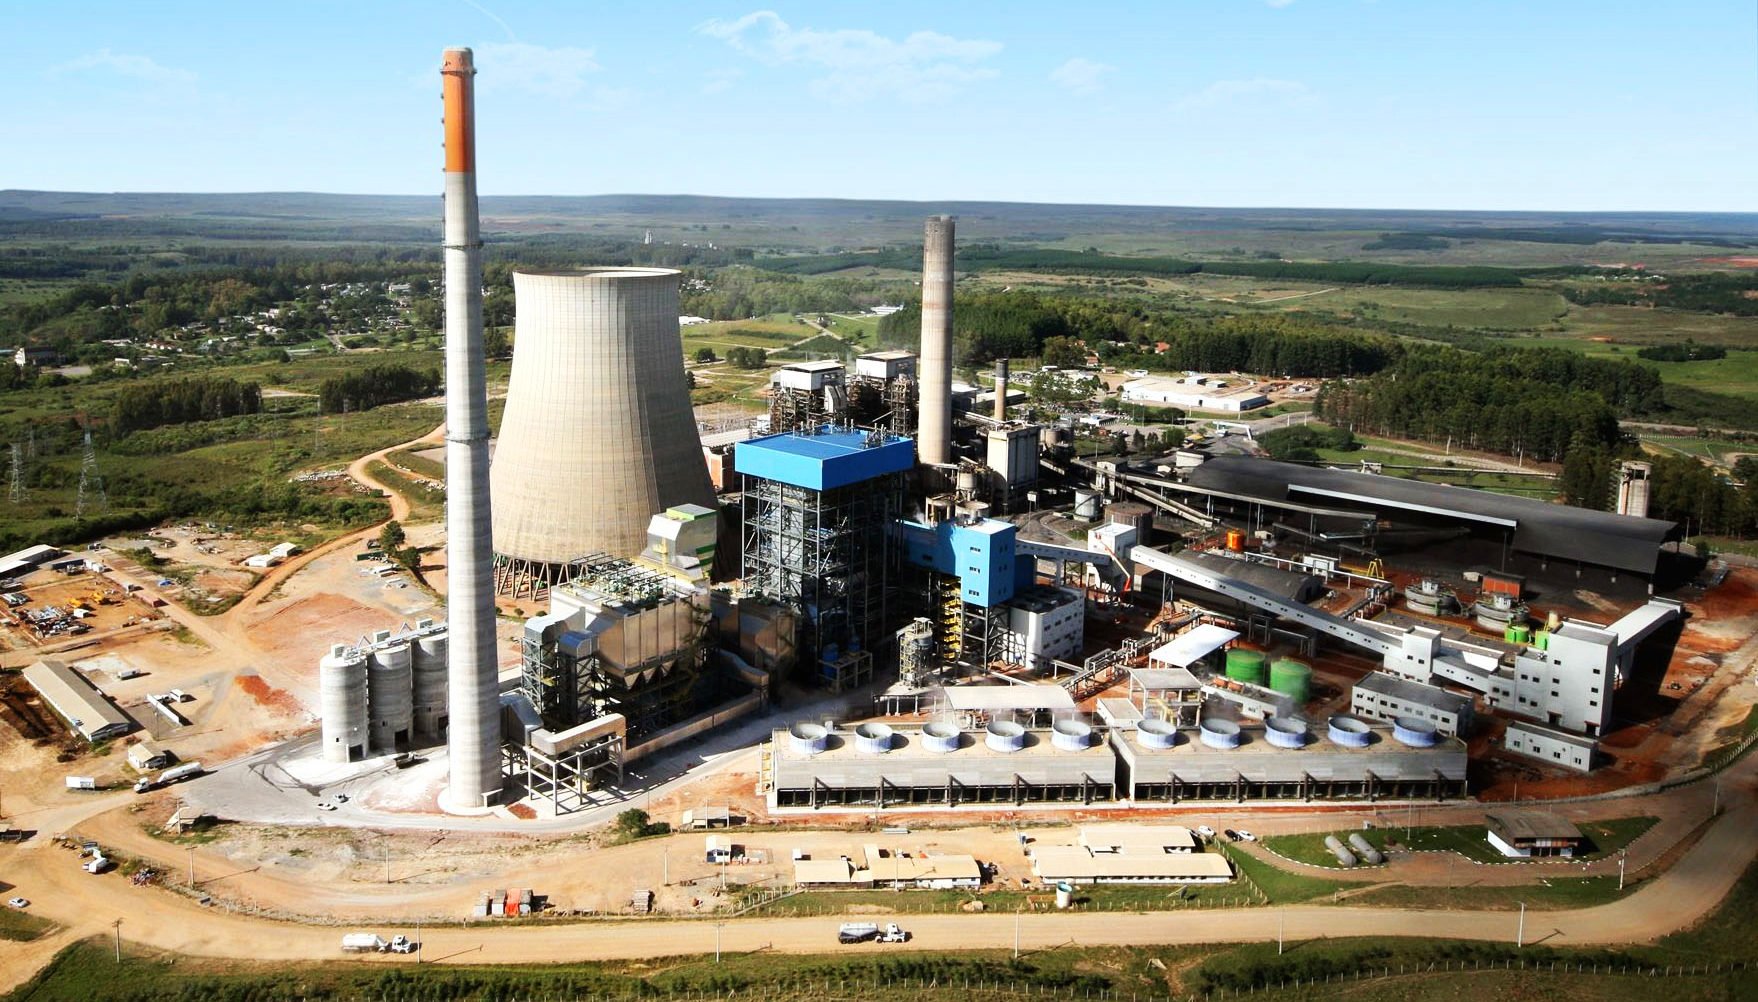 Menos eficientes, usinas a carvão foram as que mais emitiram CO₂ entre termelétricas brasileiras, aponta estudo. Na imagem, termelétrica a carvão mineral Candiota III, com capacidade instalada de 350 MW (Foto: CGT Eletrosul/Divulgação)